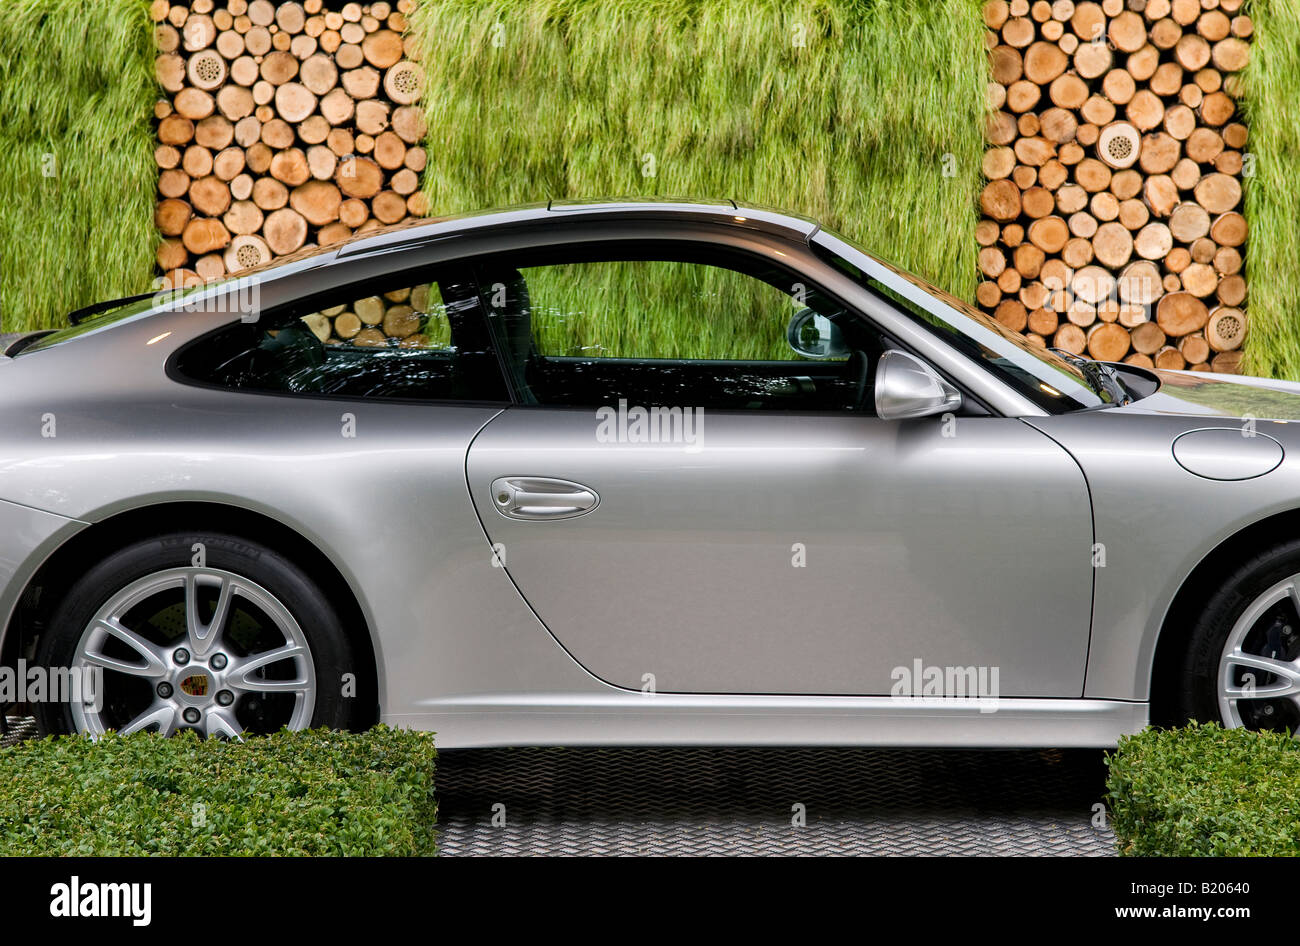 Moteur de voiture de sport Porsche 911 dans l'allée de jardin Banque D'Images